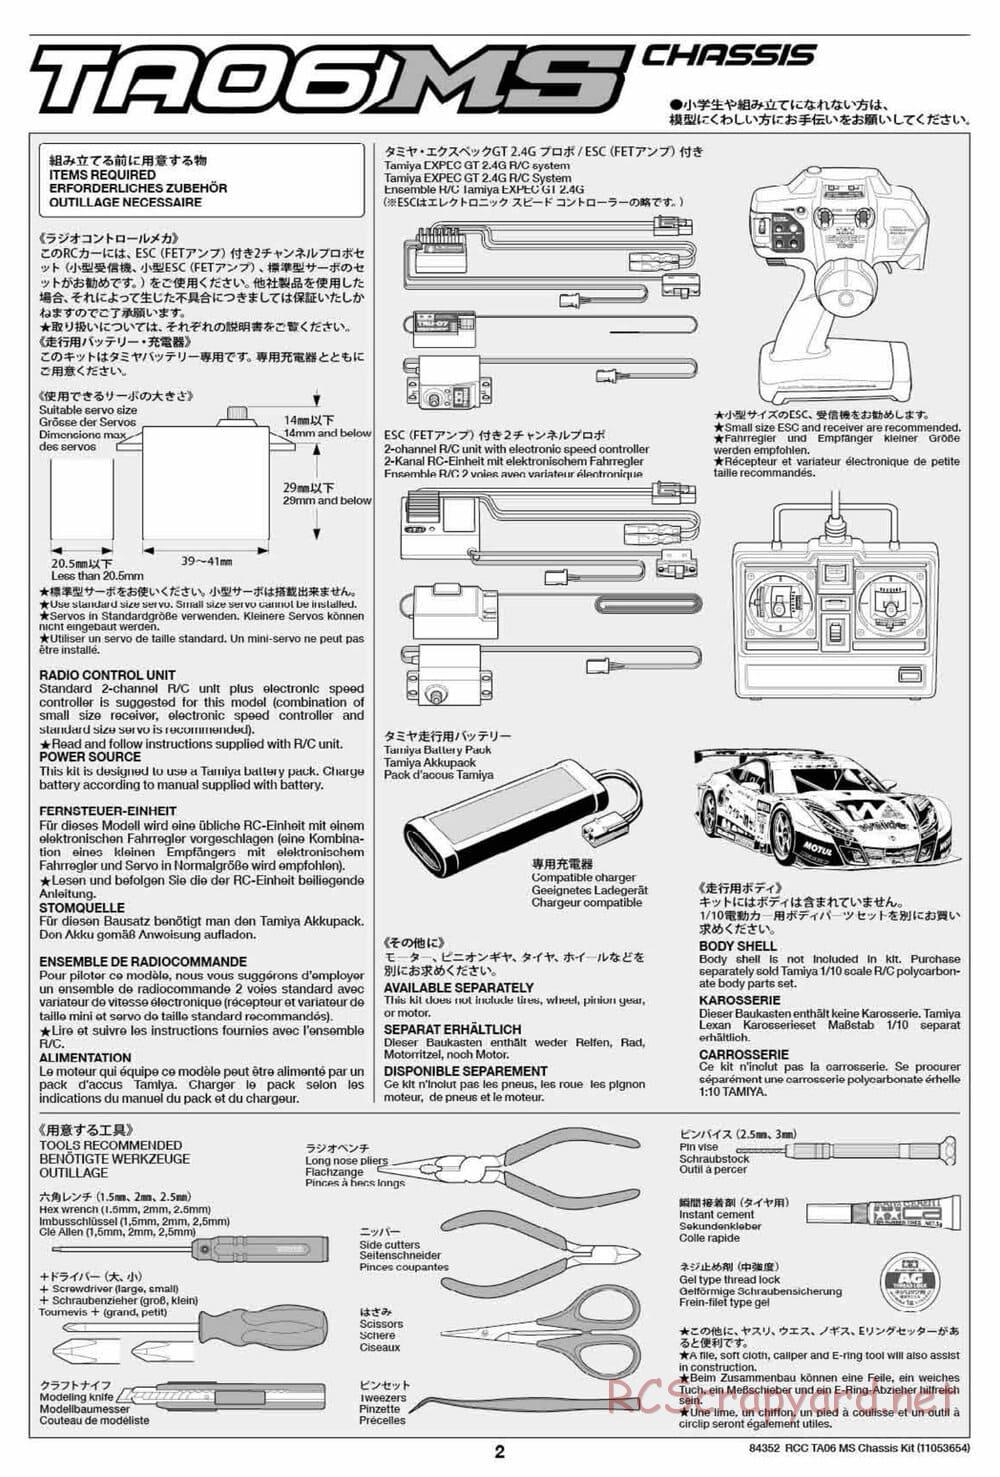 Tamiya - TA06 MS Chassis - Manual - Page 2